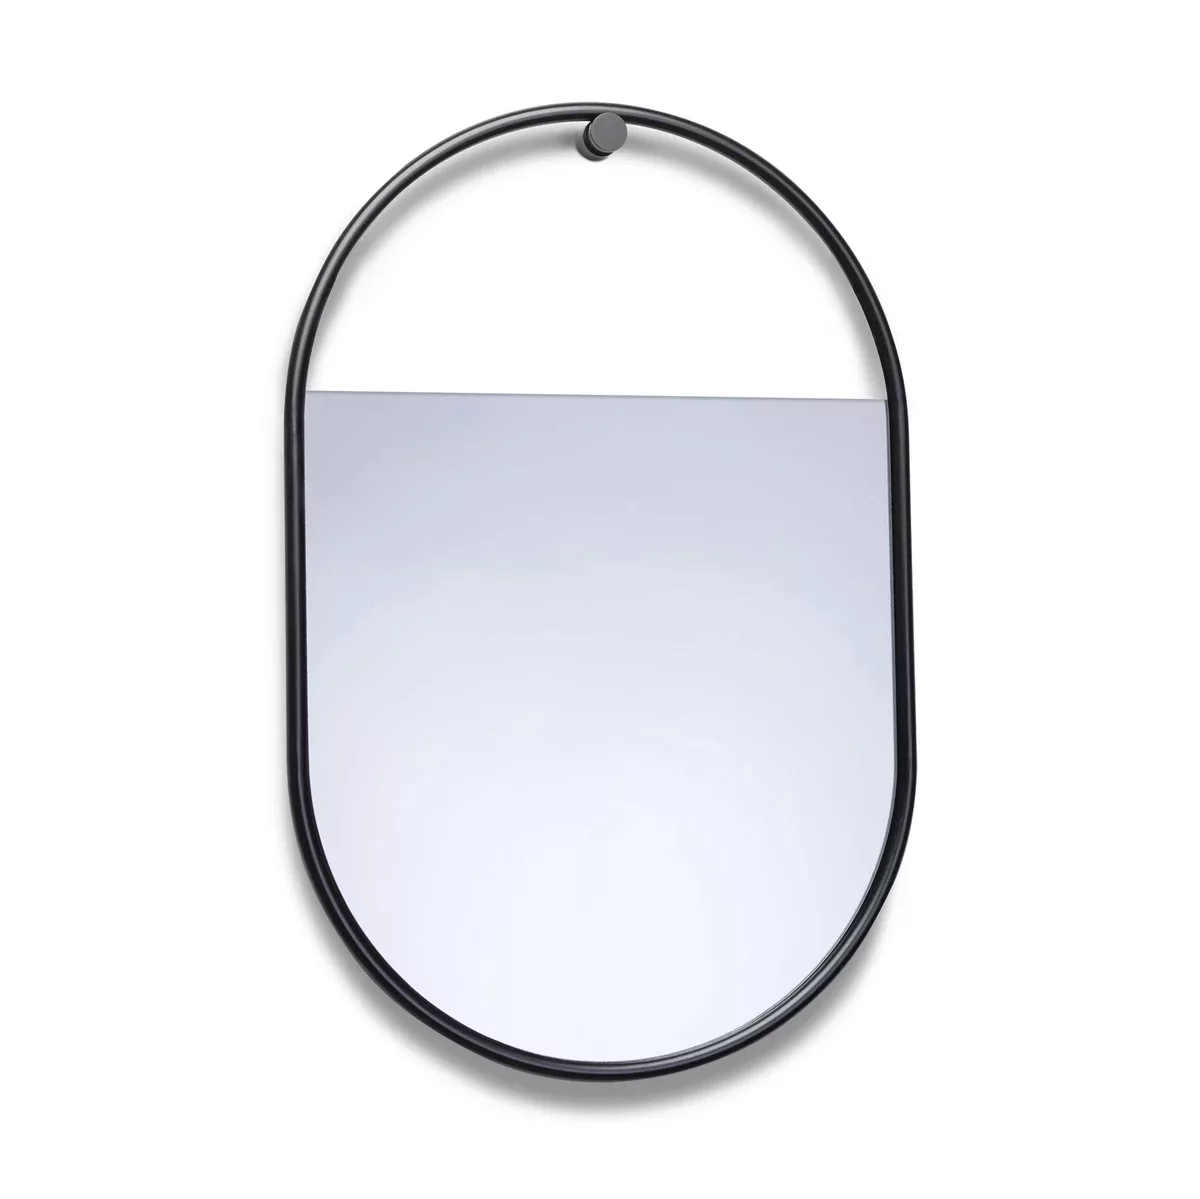 Peek Spiegel oval 40 x 60cm günstig online kaufen